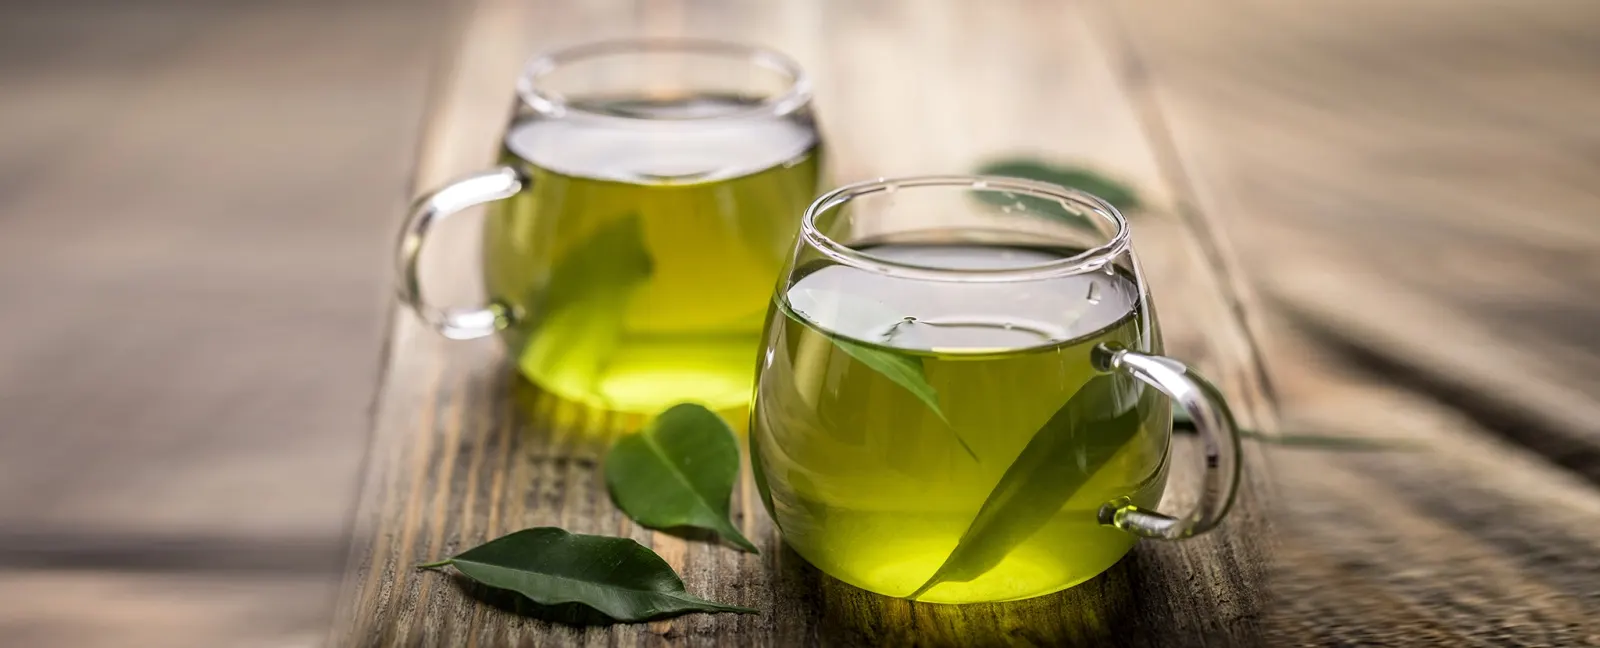 Explore Green Tea Benefits, Recipes and FAQS